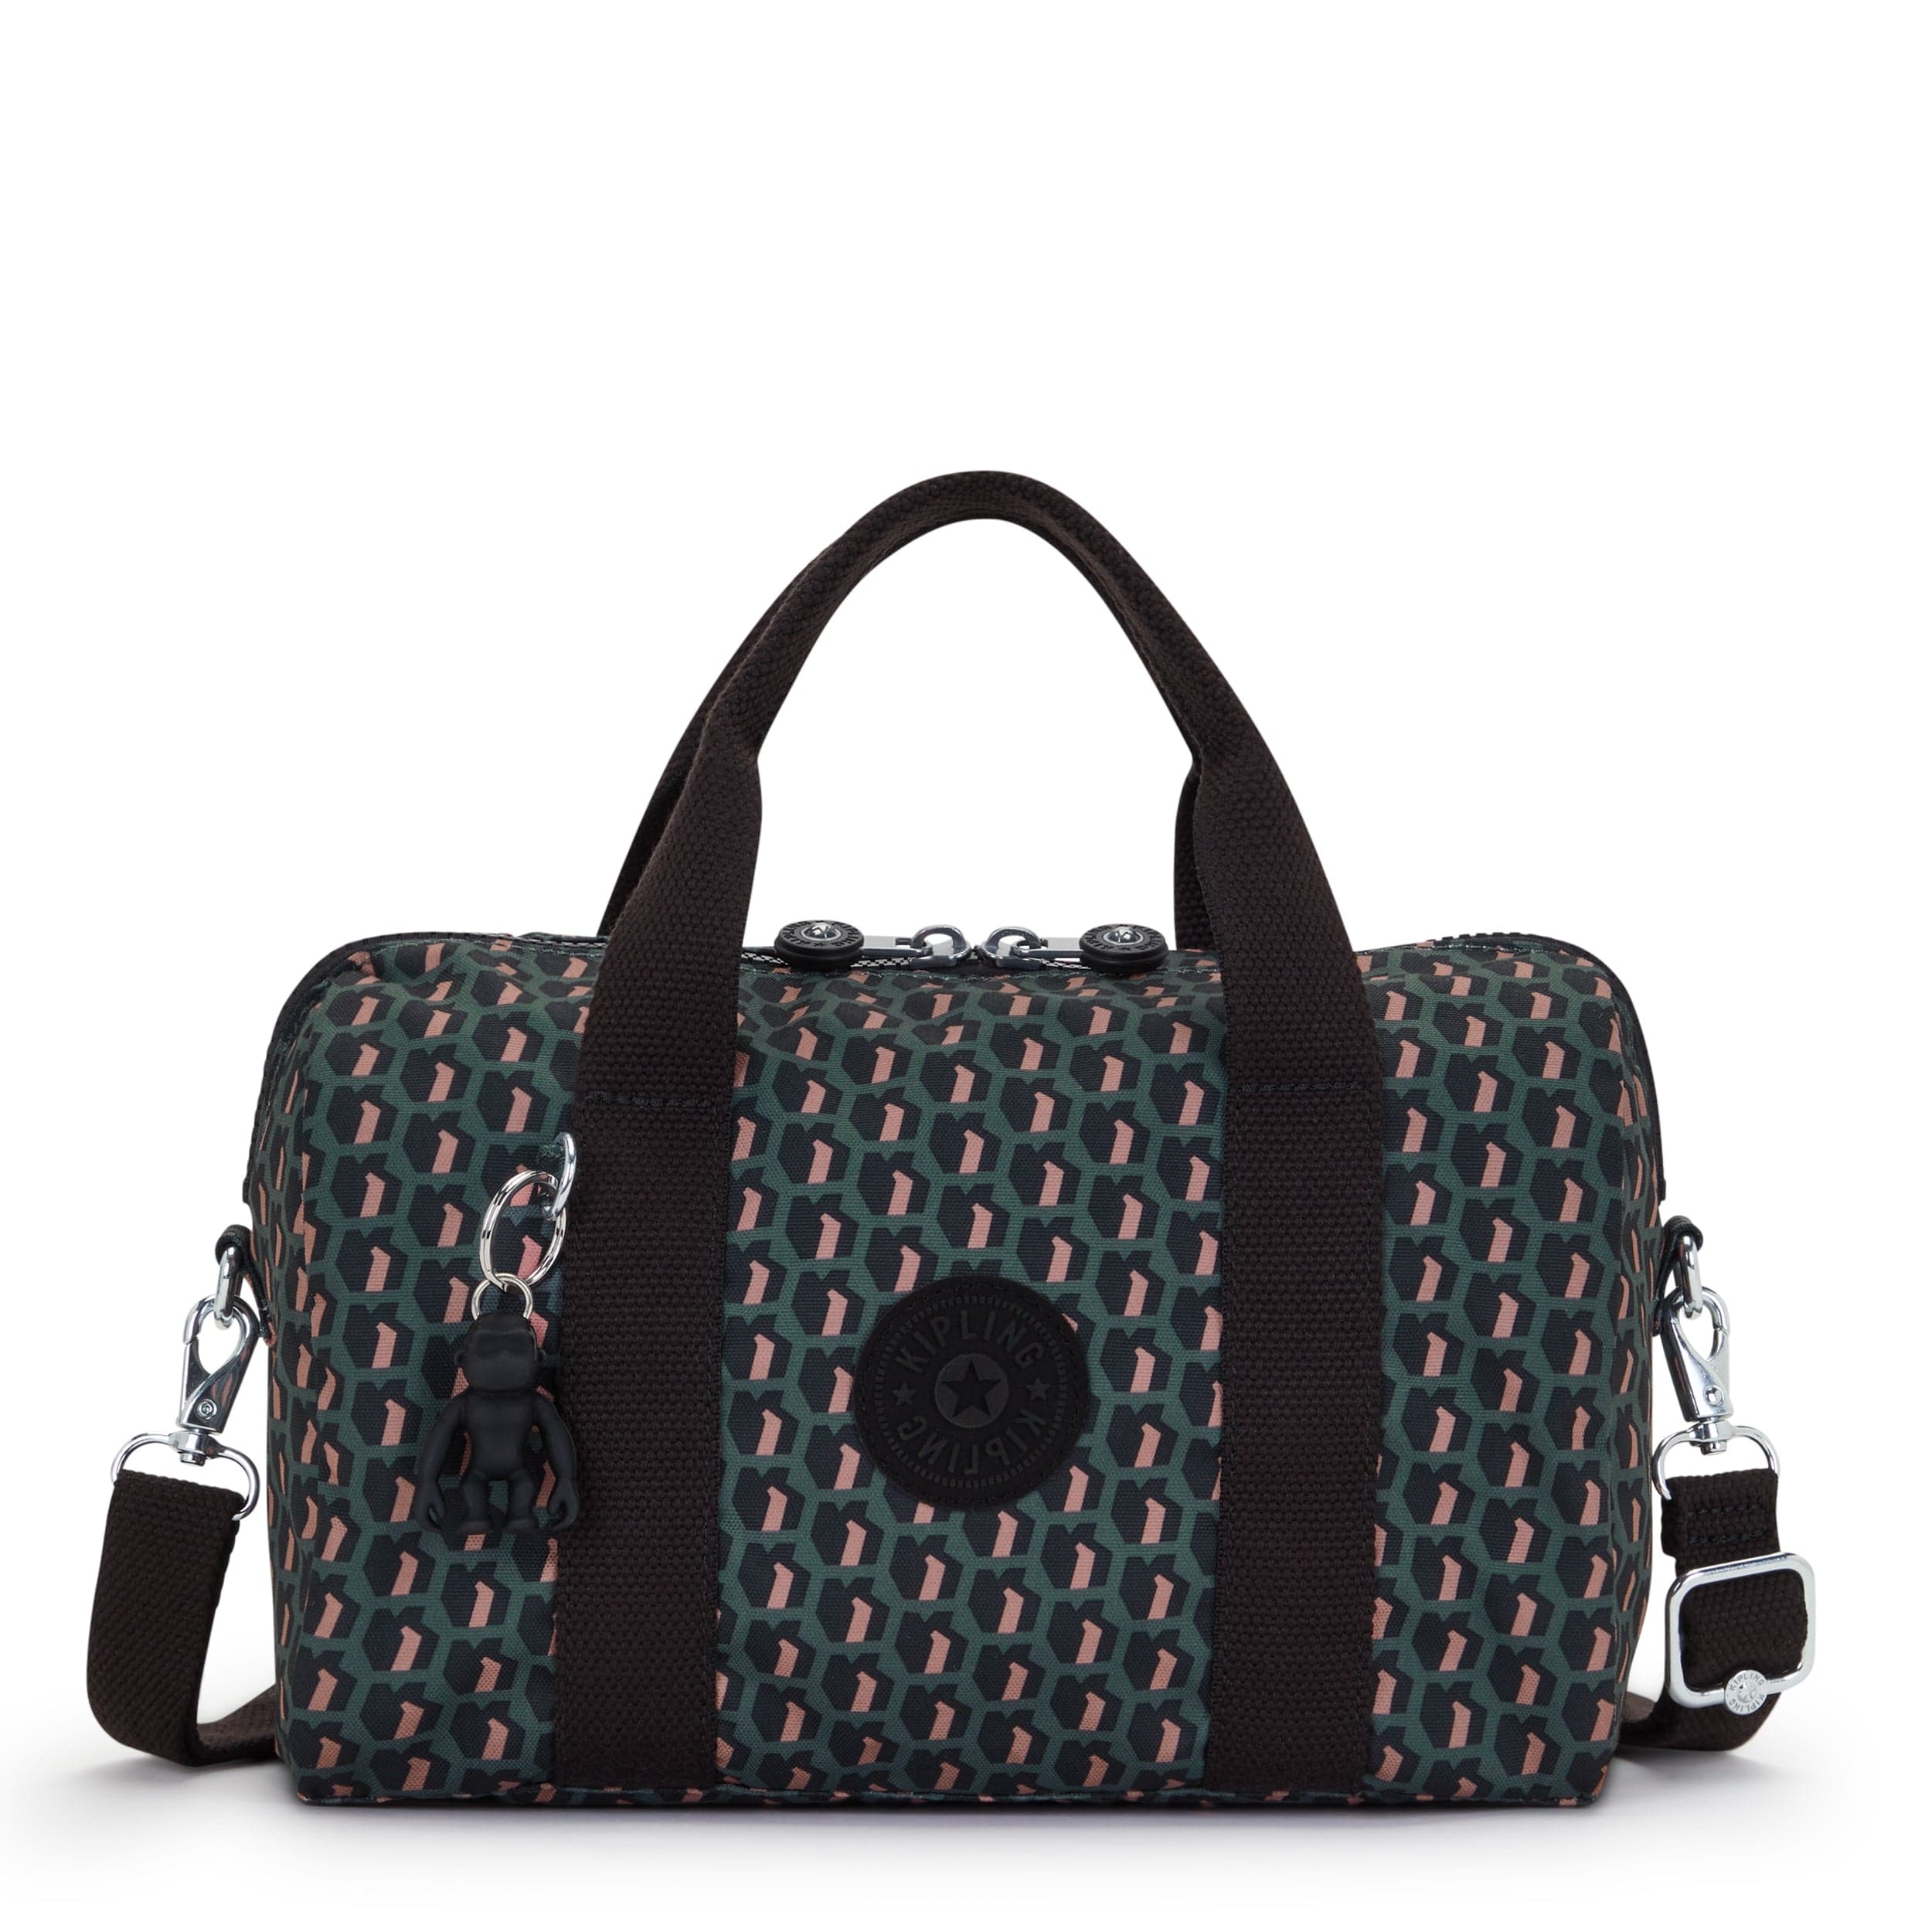 KIPLING-Bina M-Medium Handbag (With Detachable Shoulderstrap)-3D K Pink-I7990-E1A